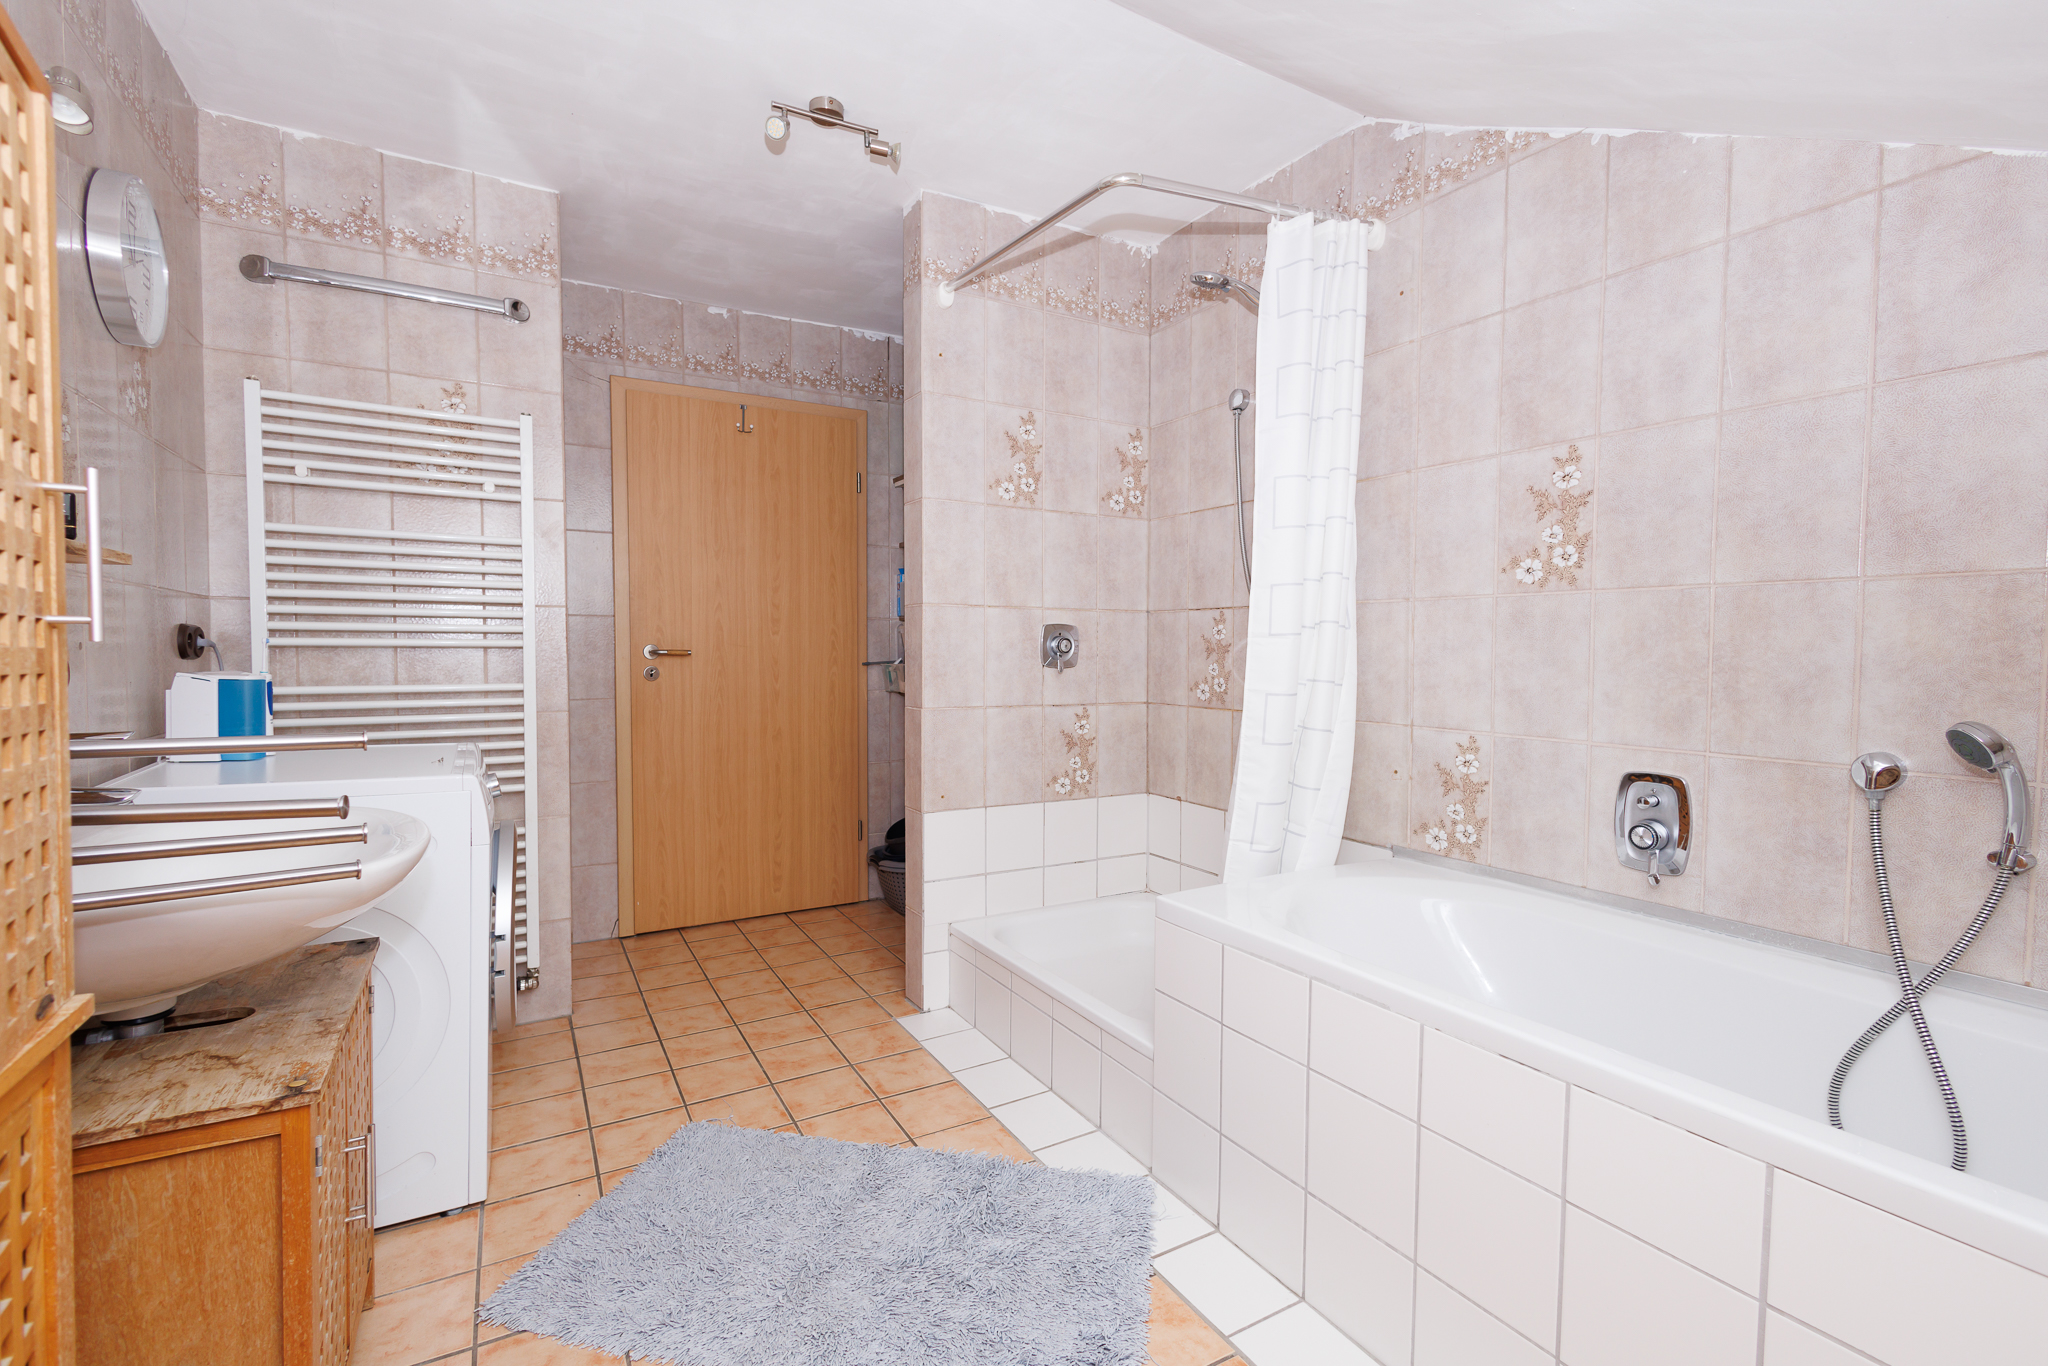 Teilmodernisiertes Bad in Wohnung 1 mit Wanne, Dusche und Waschbecken, hellen Fliesen.